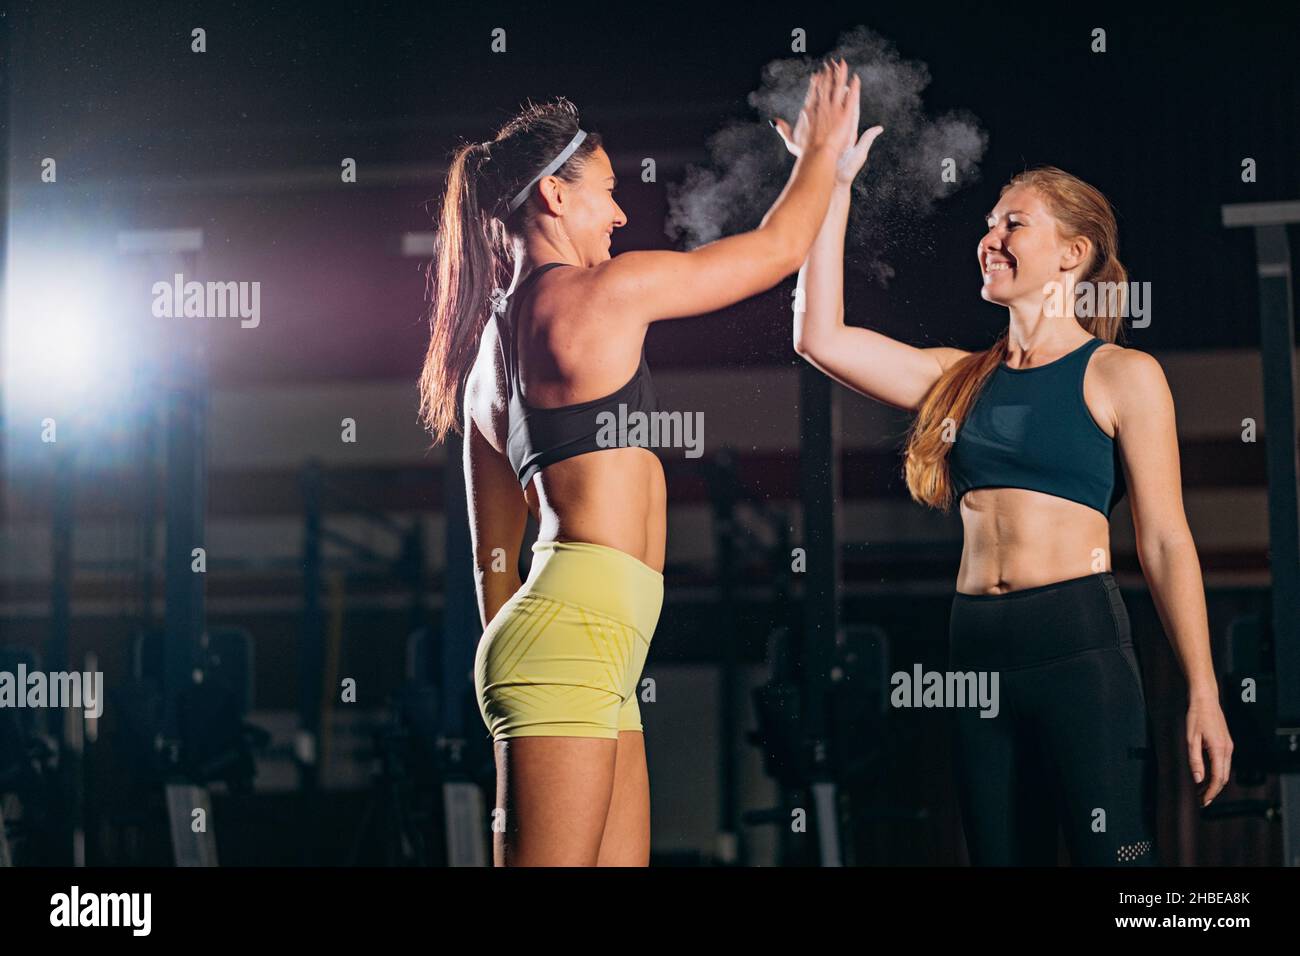 Las amigas que llevan trajes deportivos dan cinco alto a hacer ejercicio juntos y tomar pesas en el gimnasio contra la iluminación artificial Foto de stock